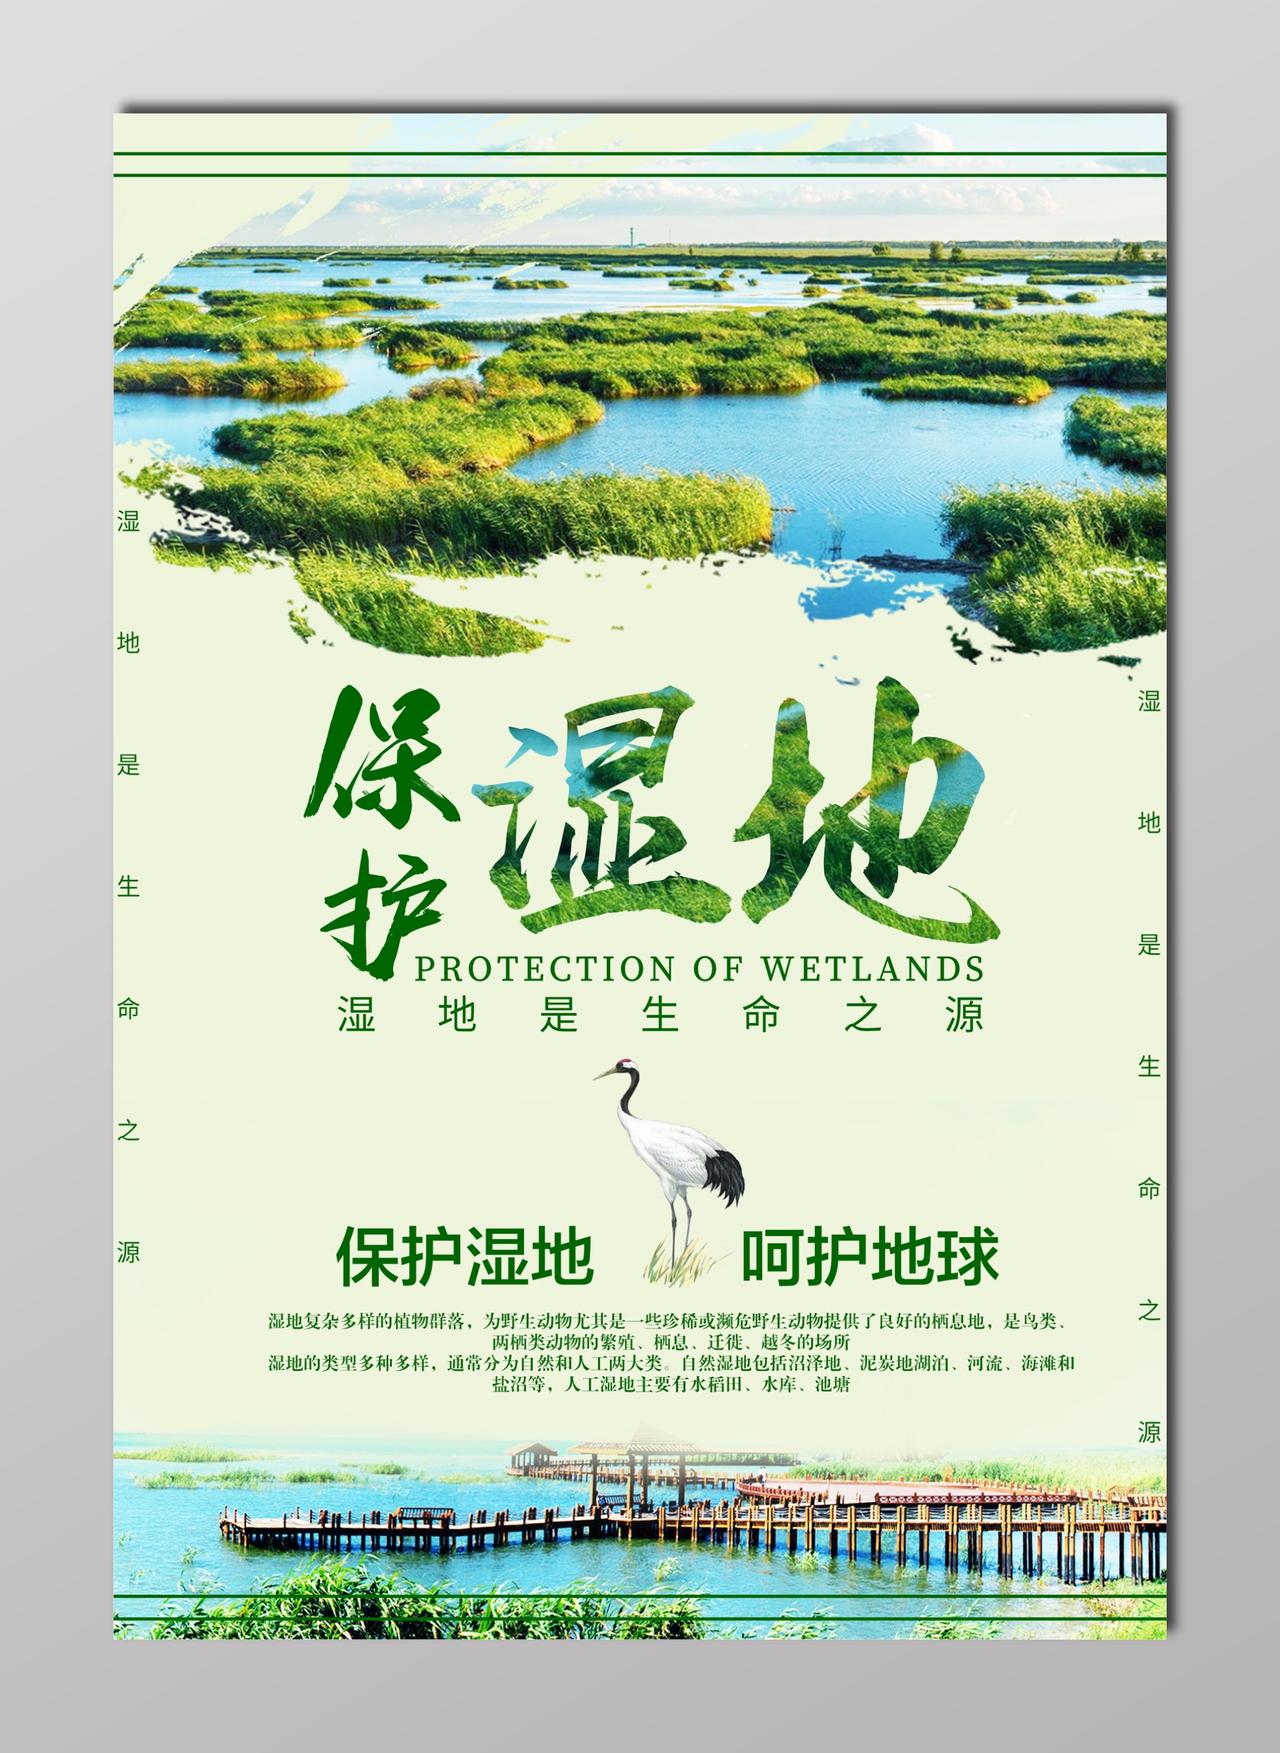 世界湿地日保护湿地洁净白海报设计模板